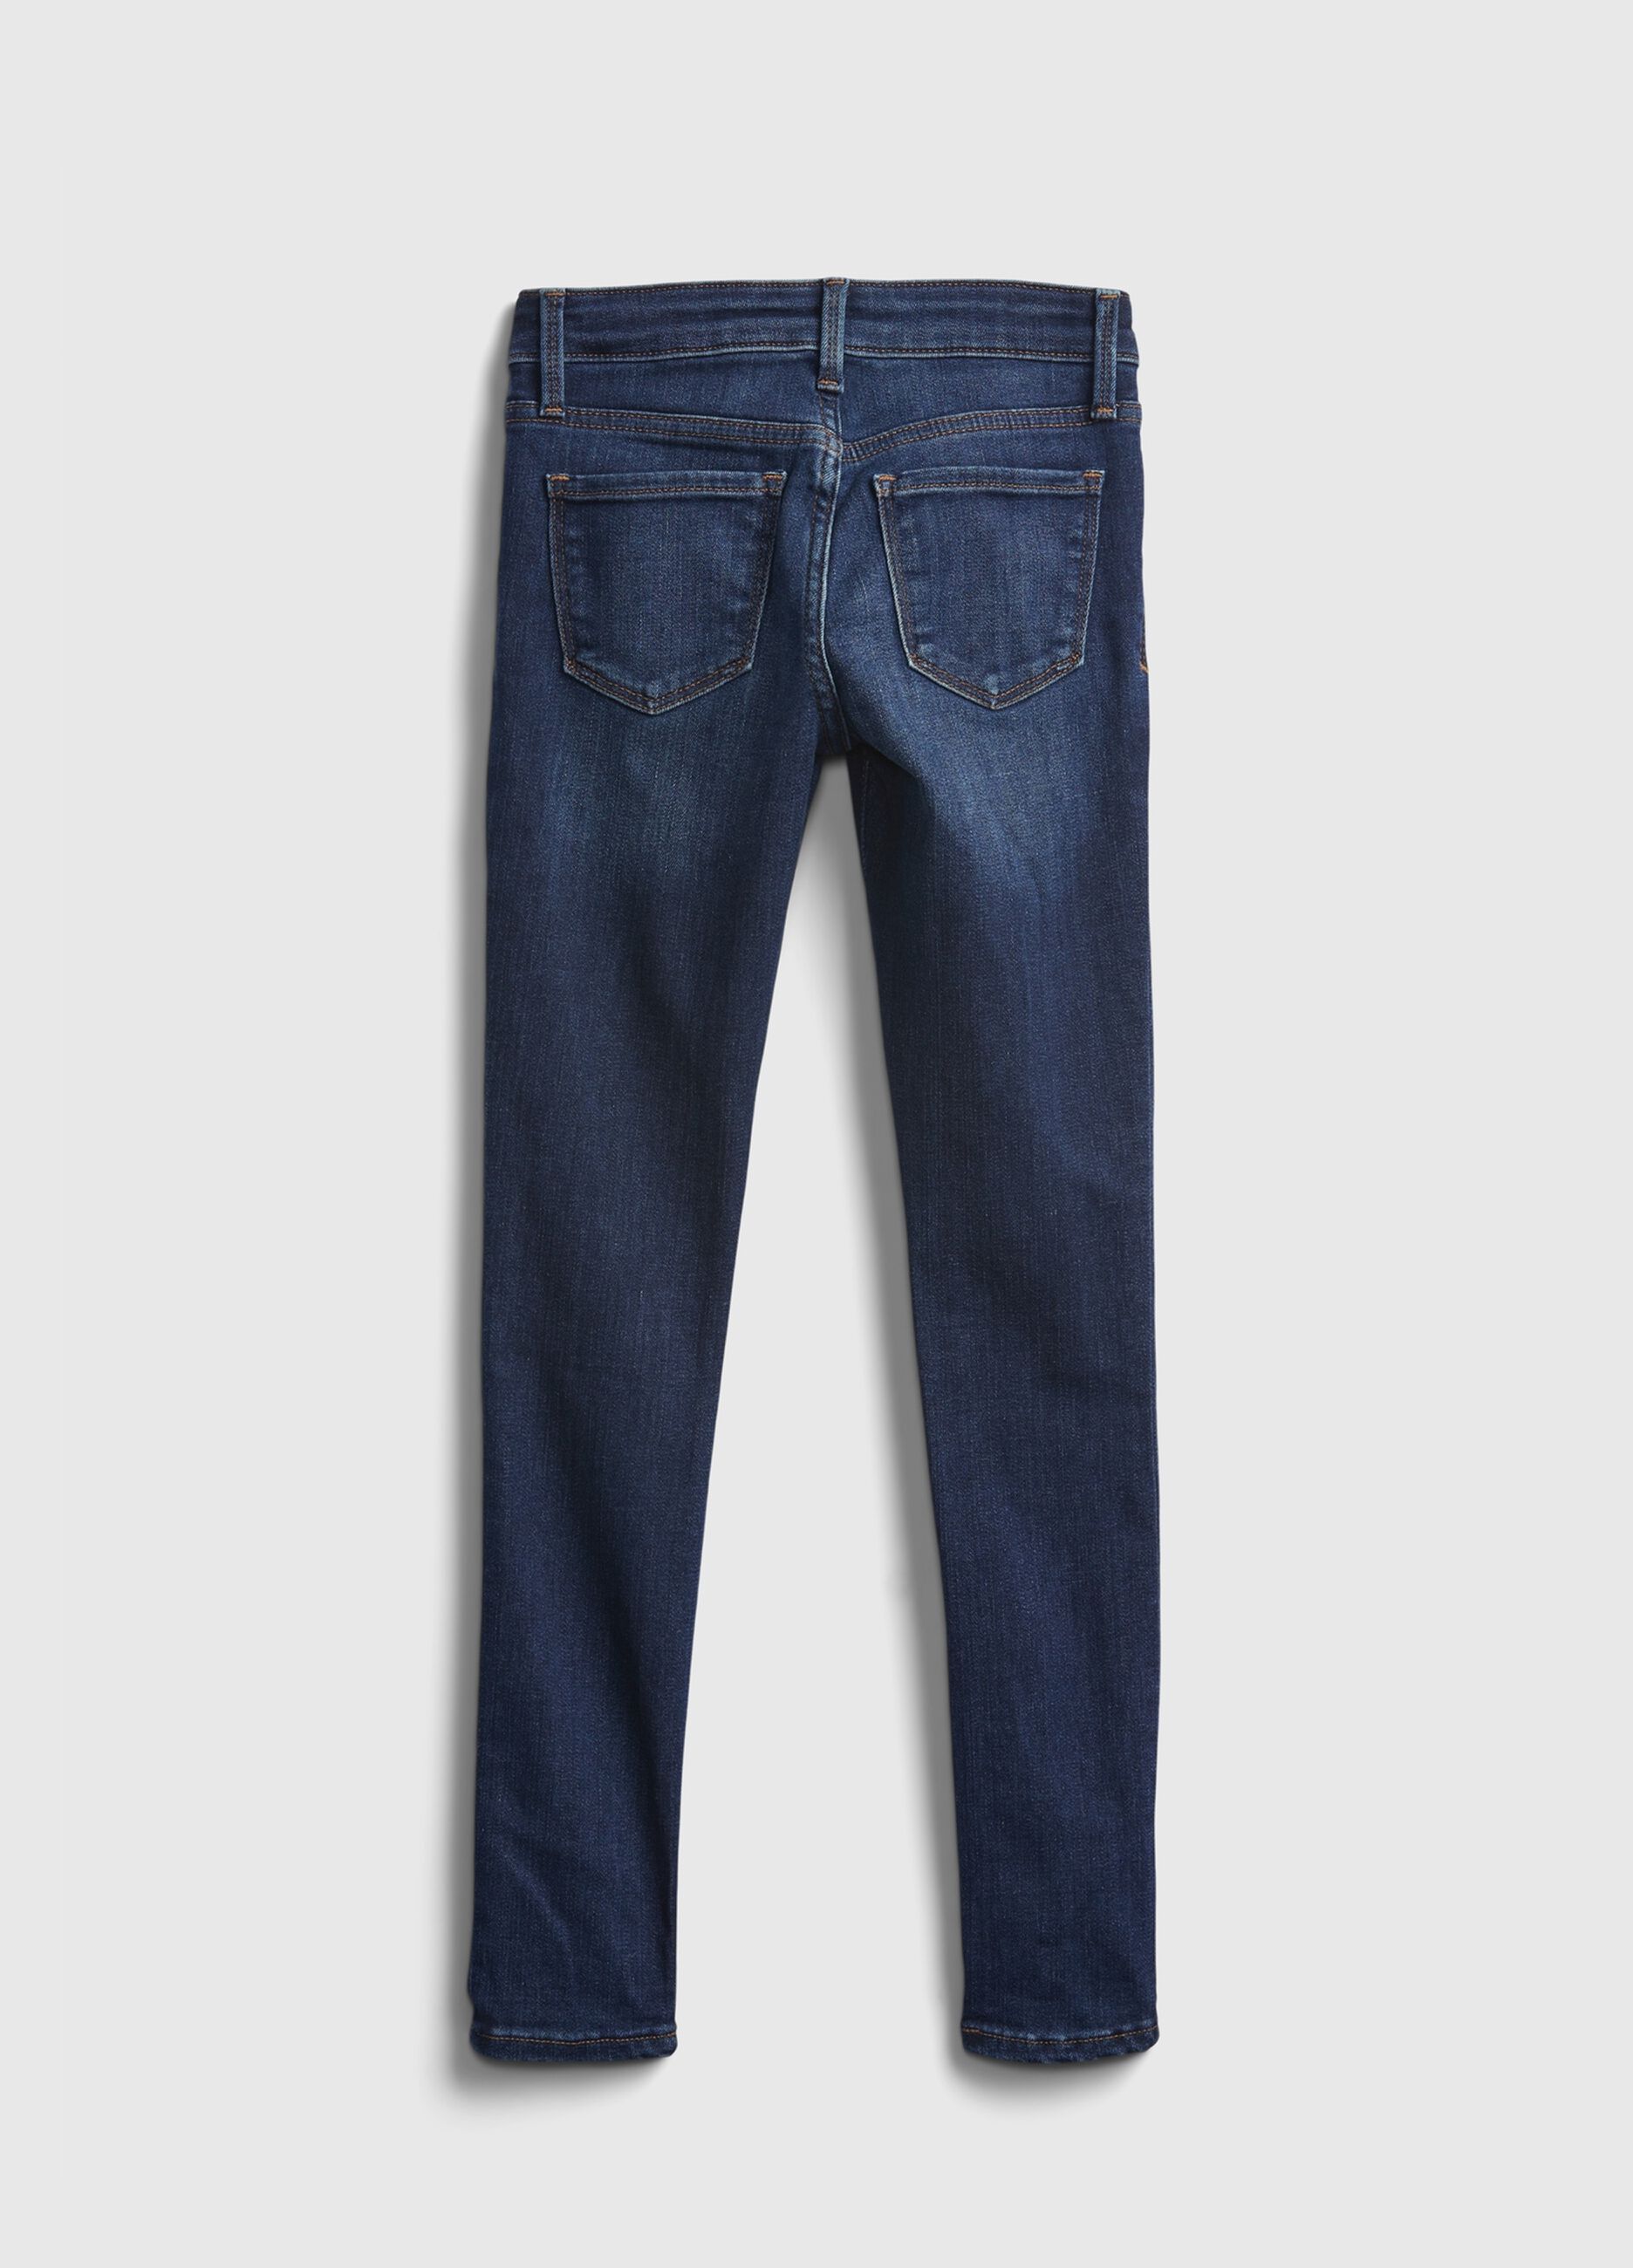 5-pocket, super-skinny jeans_1